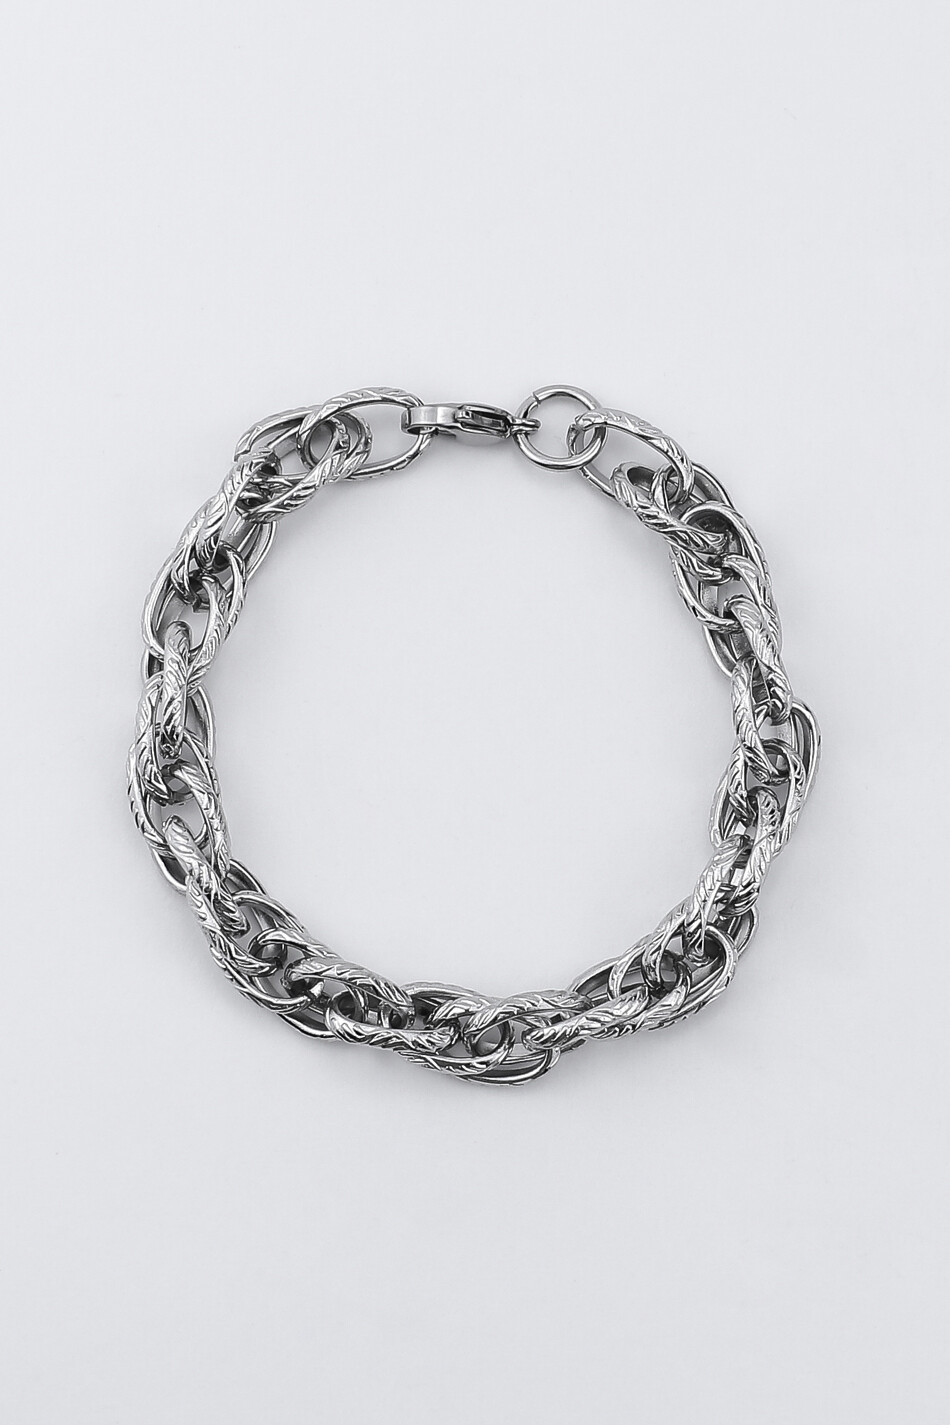 Bracelet "Cord weave"